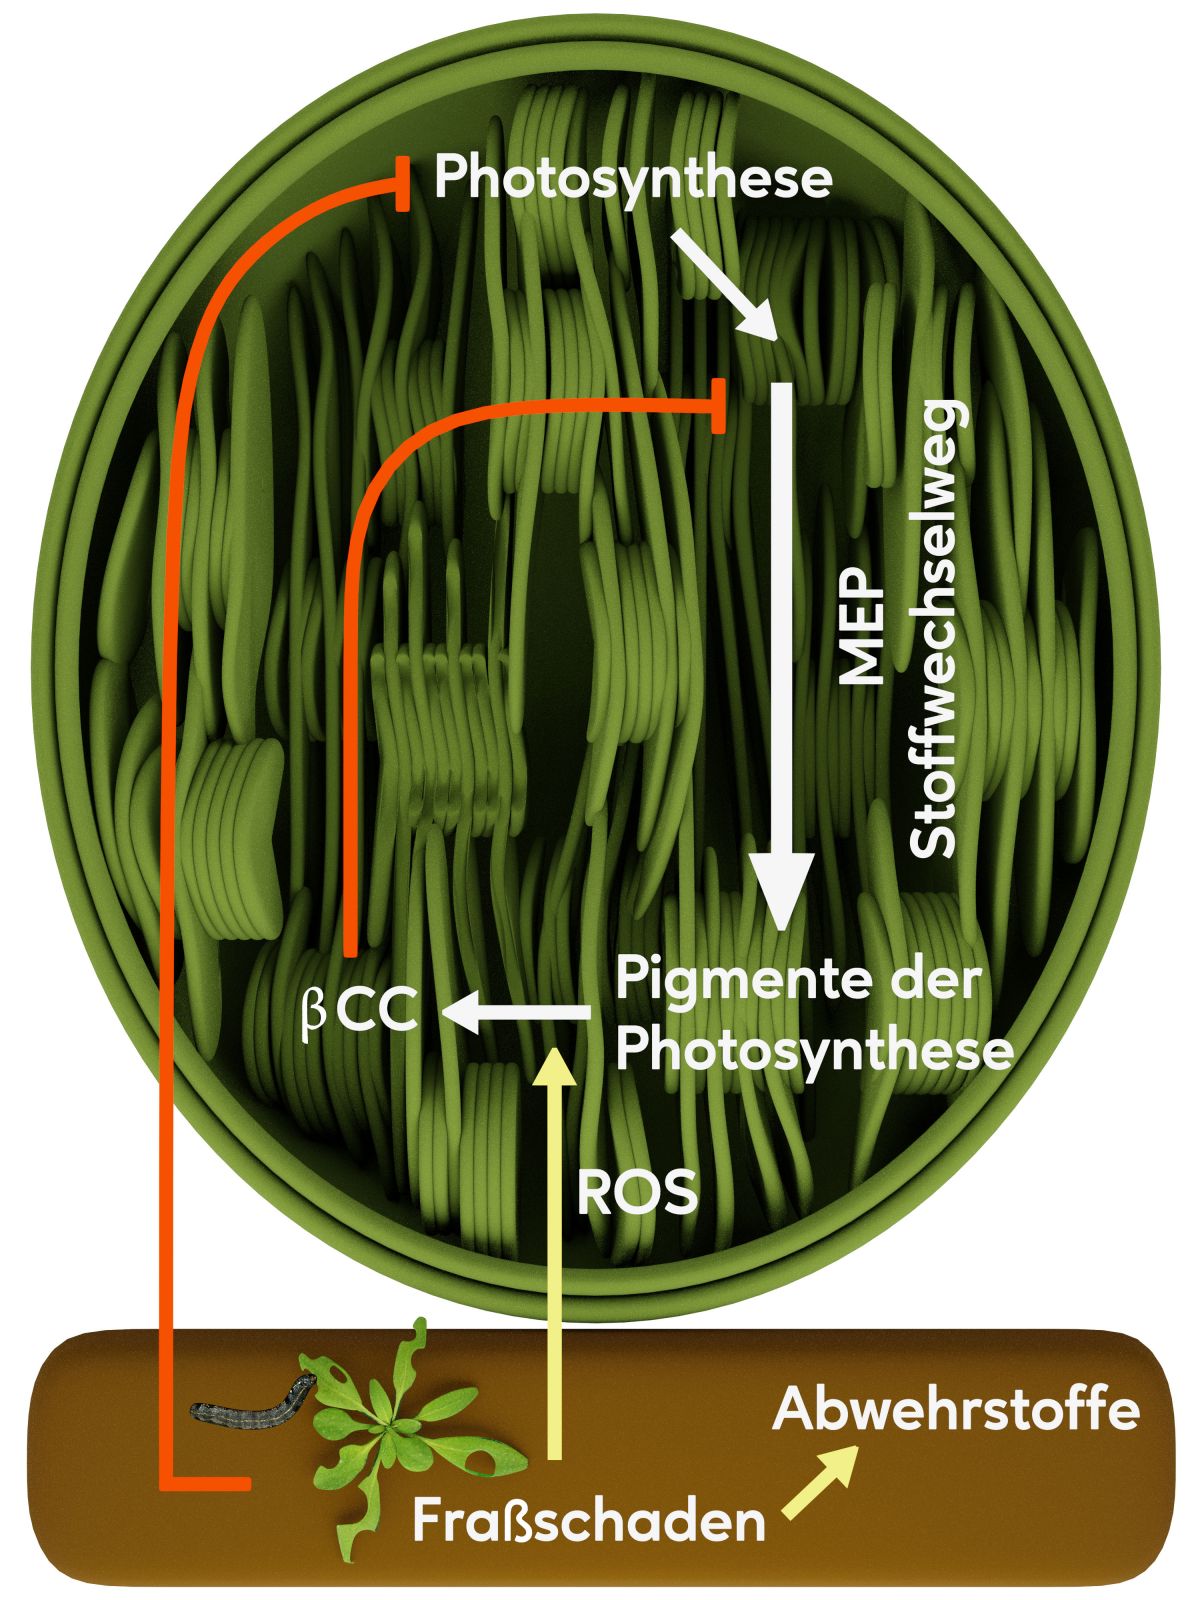 Fraßschäden bewirken nicht nur, dass Pflanzen vermehrt Abwehrstoffe bilden, sie führen auch zu einer Verlangsamung von Wachstumsprozessen. Durch eine reaktive Form von Sauerstoff (ROS = reactive oxygen species) entsteht durch Spaltung von Beta-Carotin (ein Pigment der Fotosynthese) Beta-Cyclocitral (βCC), welches das geschwindigkeitskontrollierende Enzym des MEP-Stoffwechselwegs, der in den Chloroplasten lokalisiert ist, direkt hemmt.
